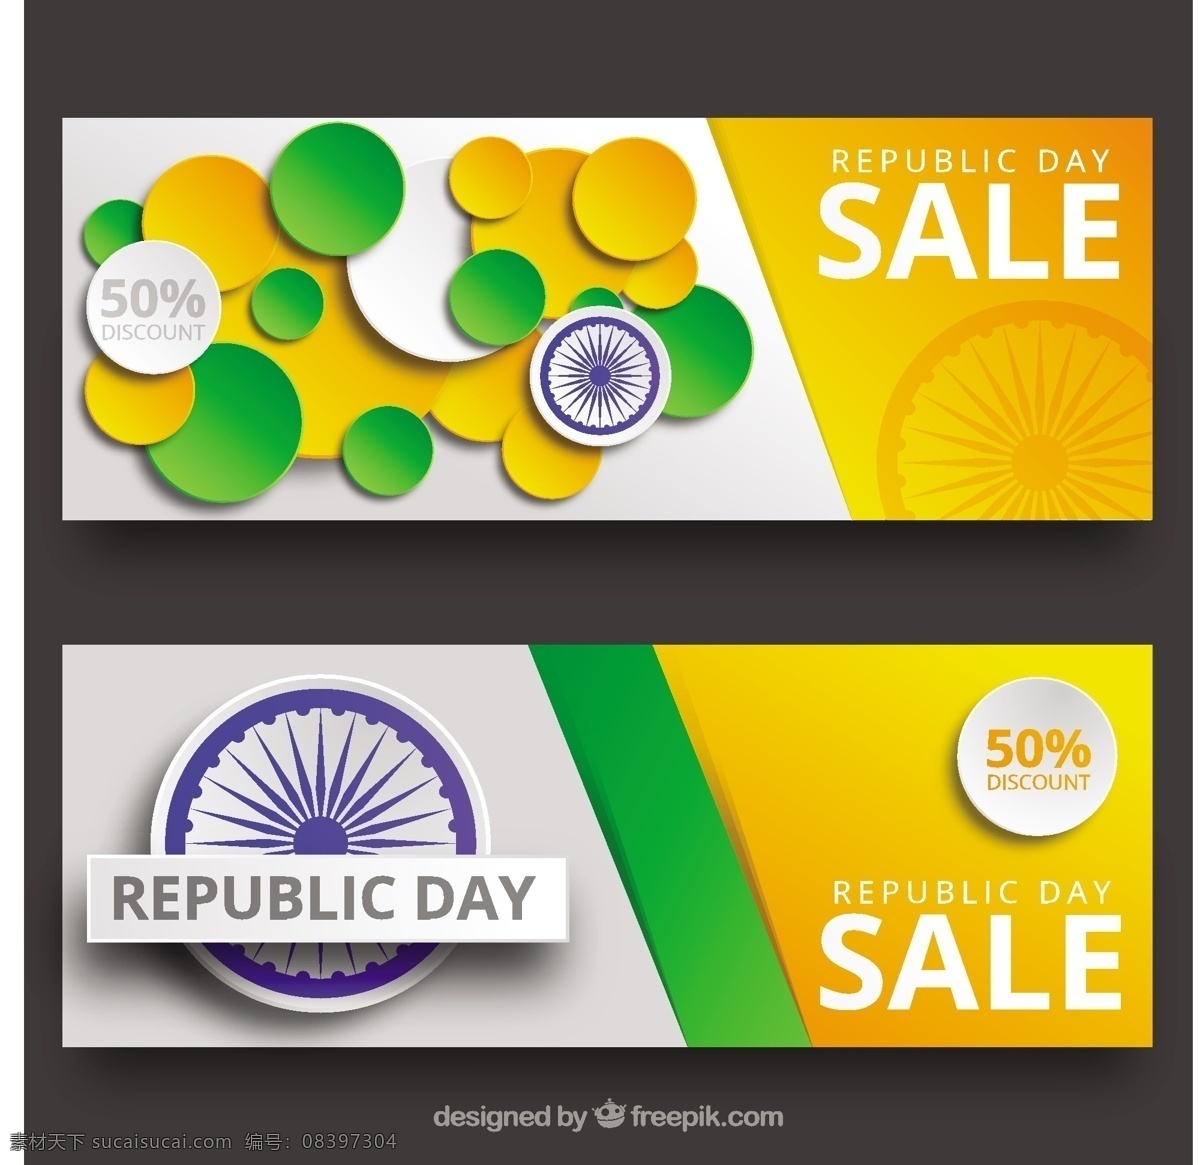 印度 共和 日记账 凭证 旗 横幅 优惠券 节日 折扣 和平 印度国旗 独立日 国家 自由 包 日 爱国 一月 独立 脉轮 黄色